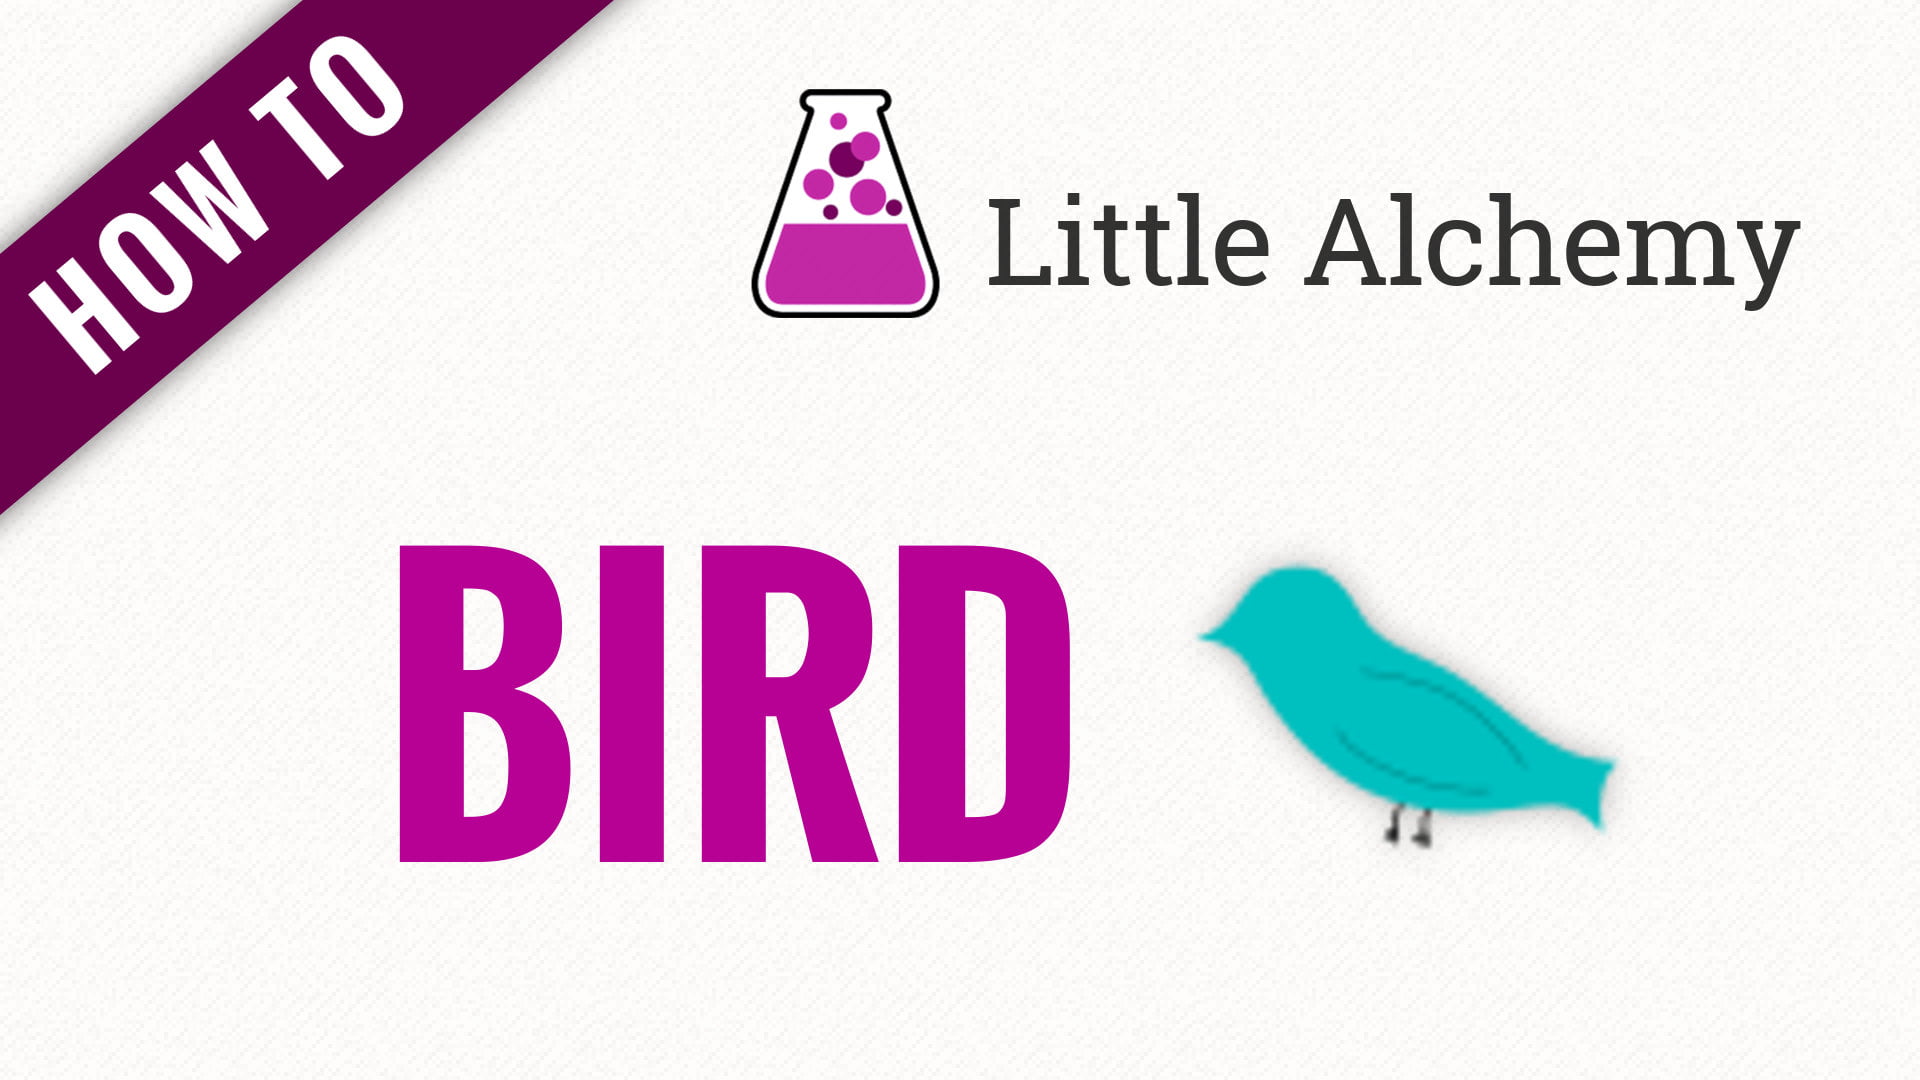 How to Make Bird Little Alchemy